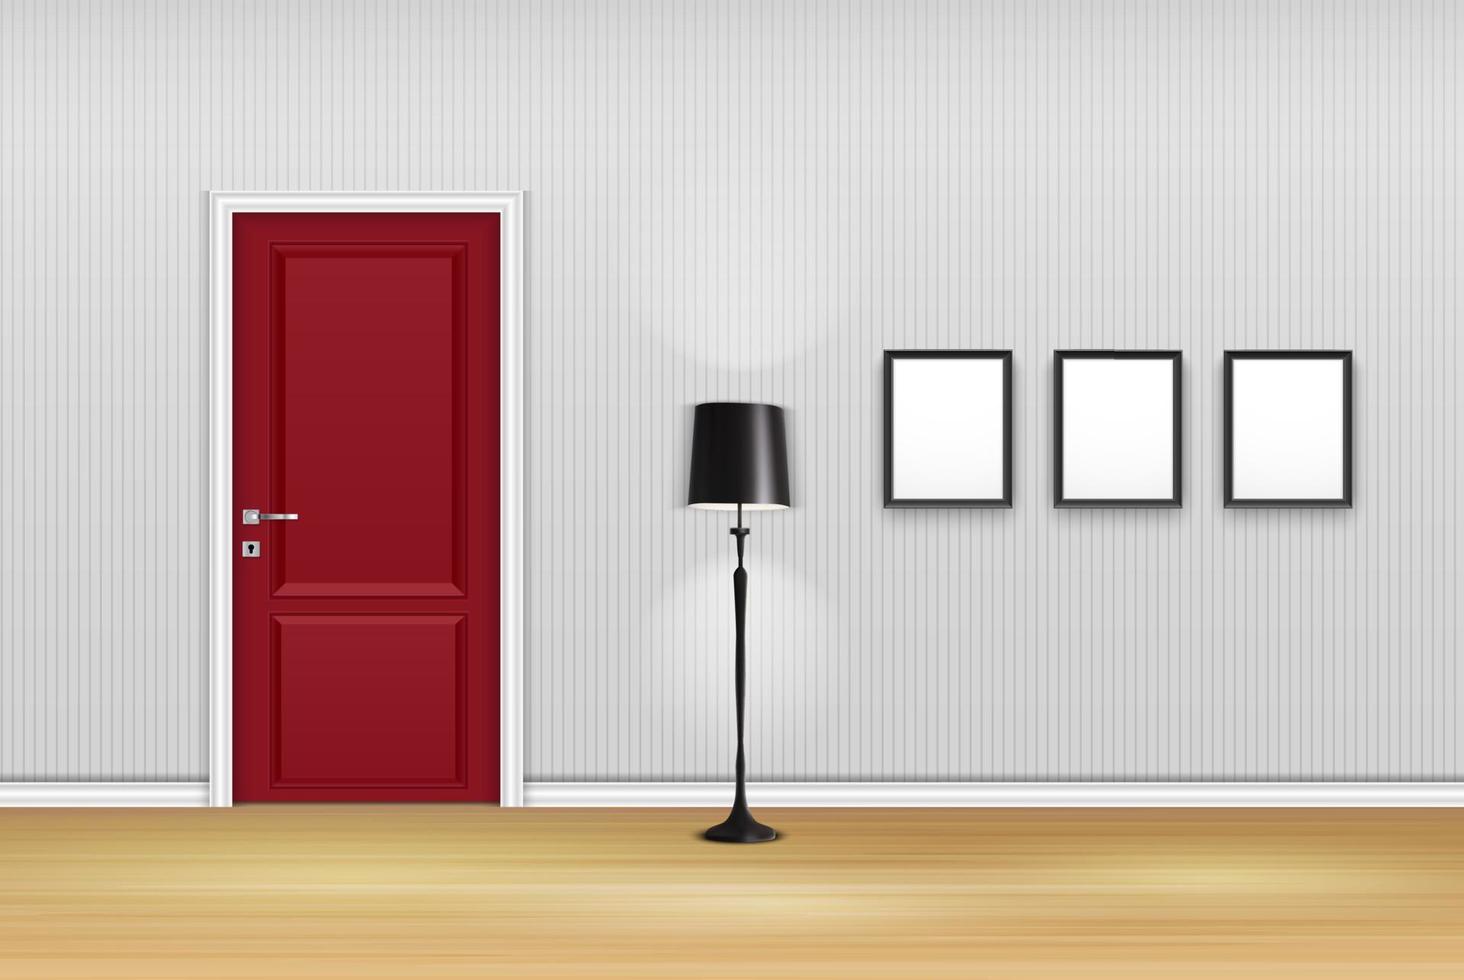 ilustración vectorial del interior de la sala de estar con puerta cerrada, lámpara y marcos vacíos en la pared vector